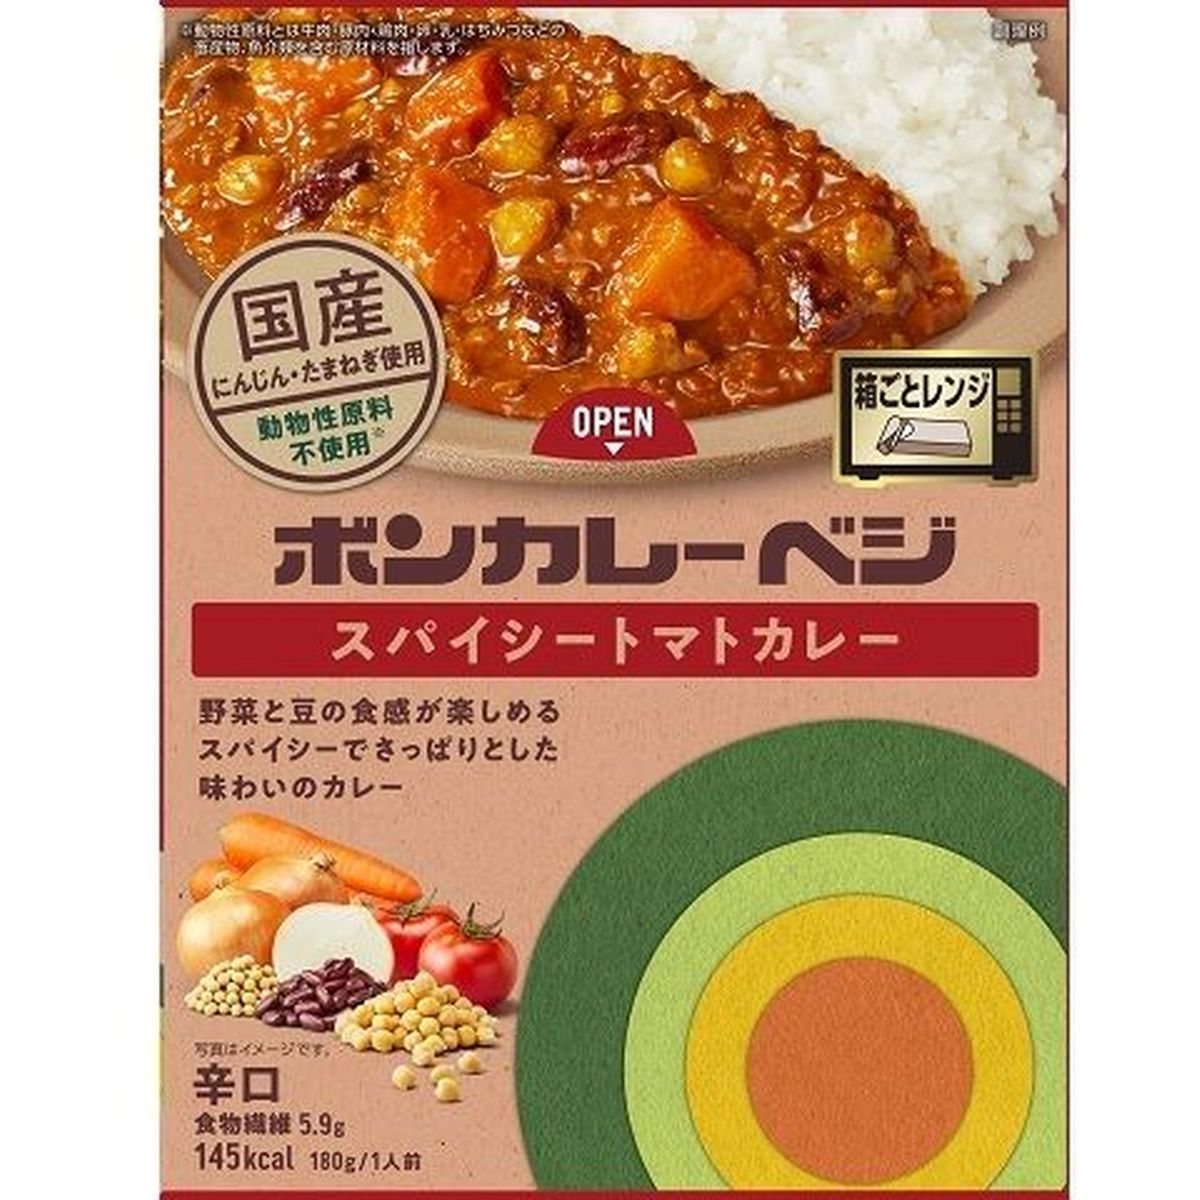 【10個入リ】大塚食品 ボンカレーベジスパイシートマトカレー 180g